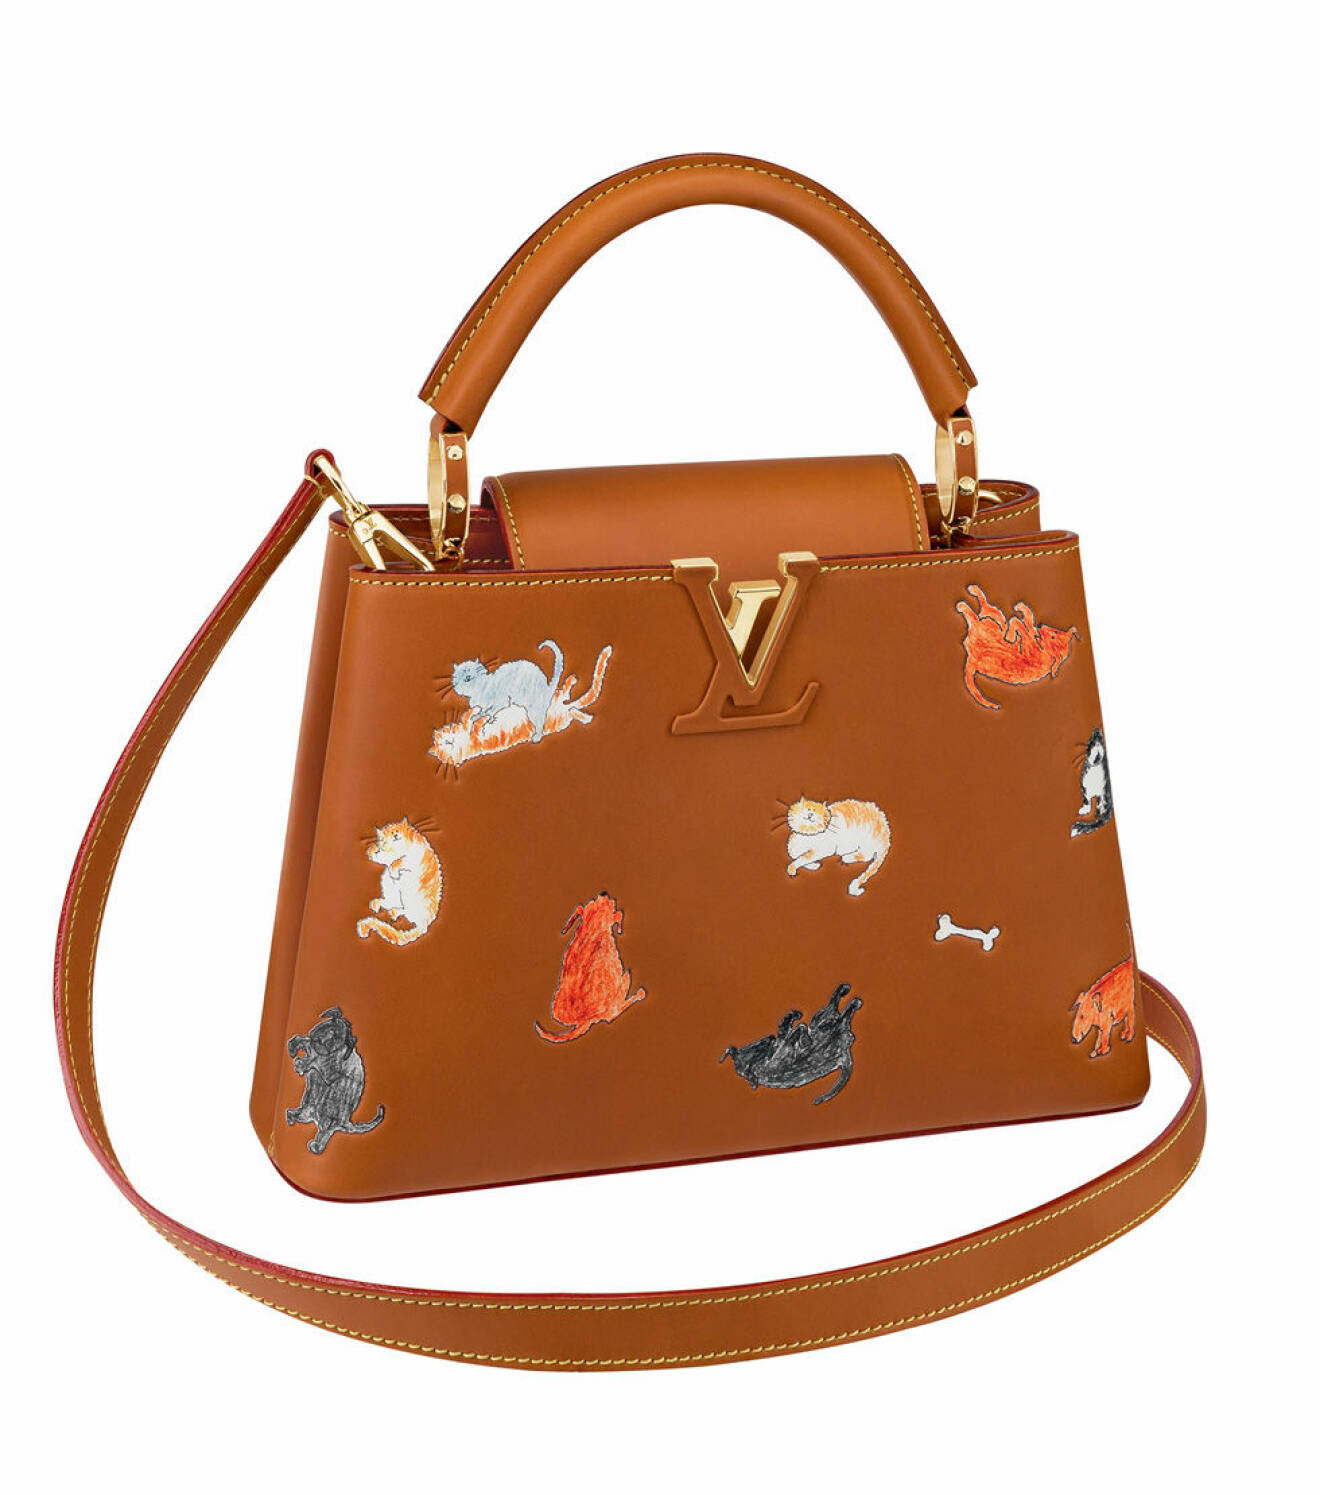 Louis Vuitton x Grace Coddington handbag